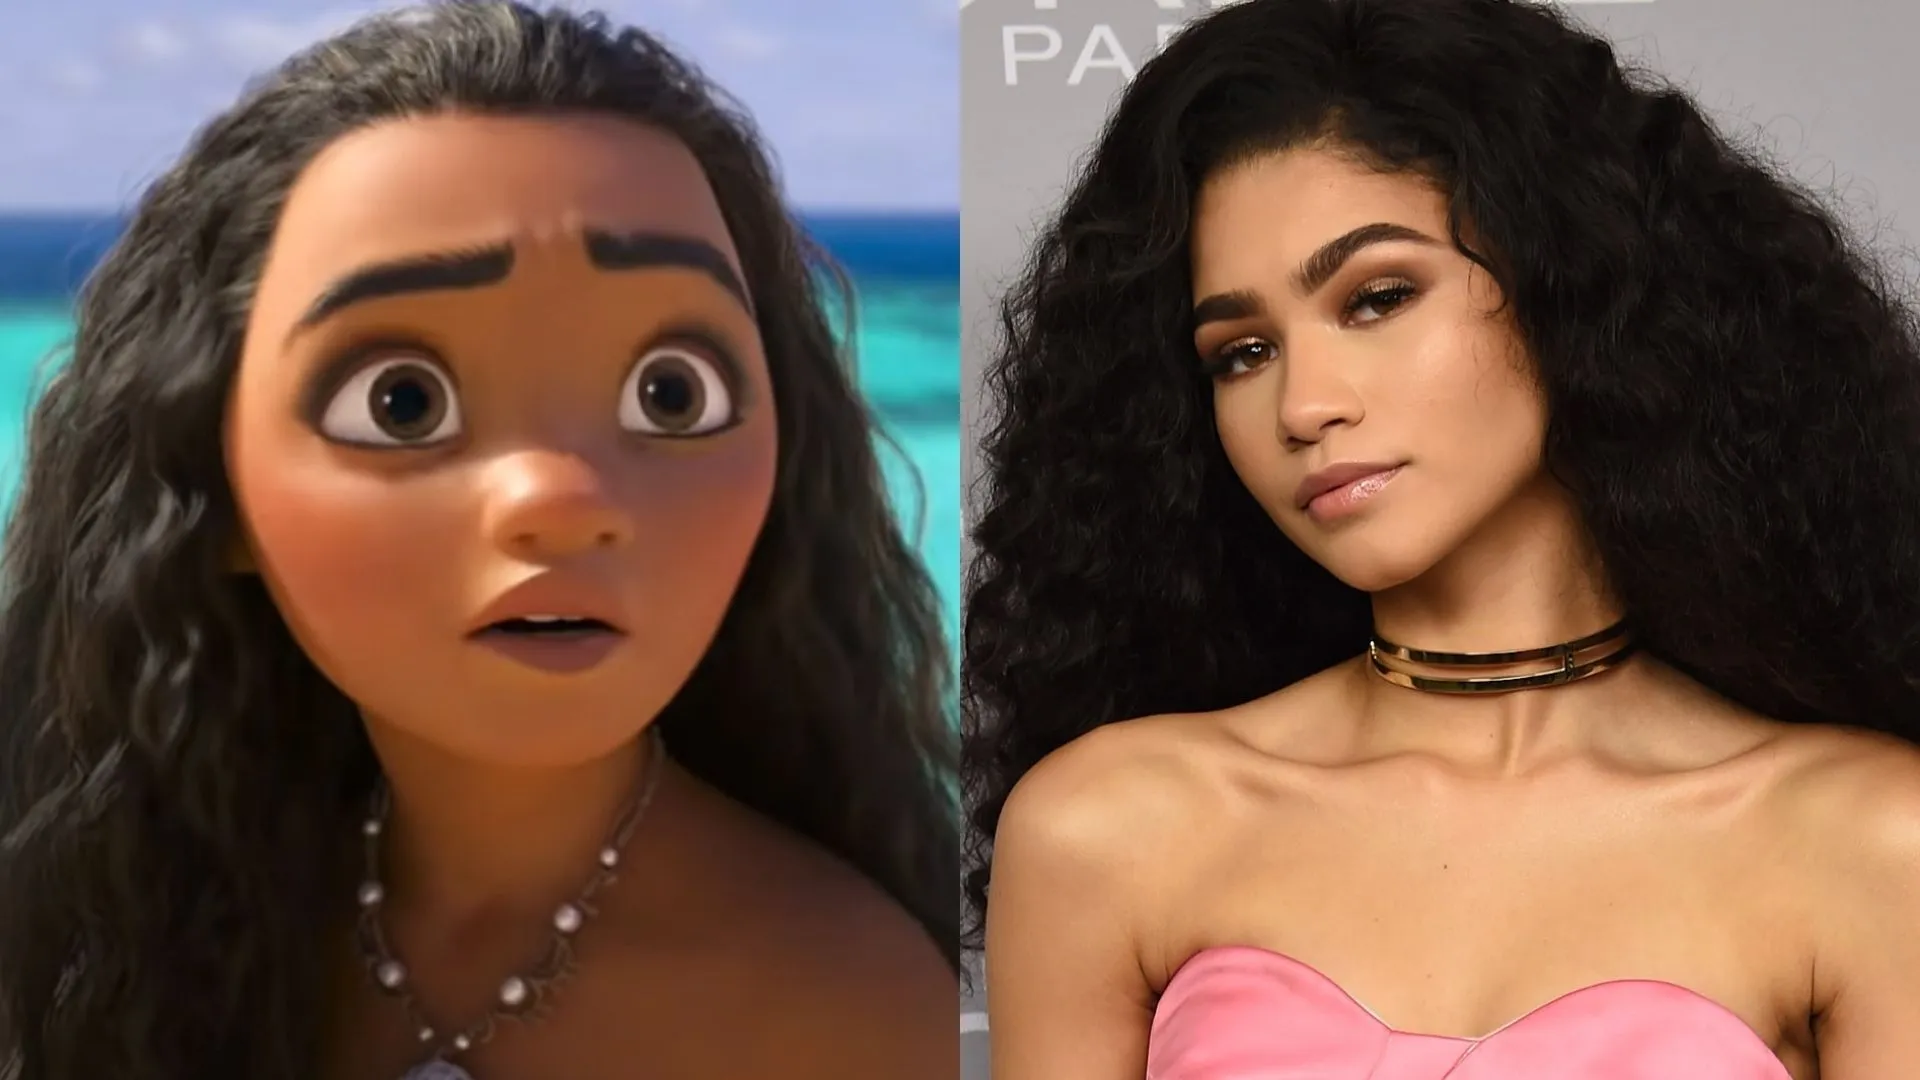 La actriz Zendaya tiene todo para convertirse en Moana, el personaje de  Disney: fotos que lo prueban | Entretenimiento Cine y Series | Univision